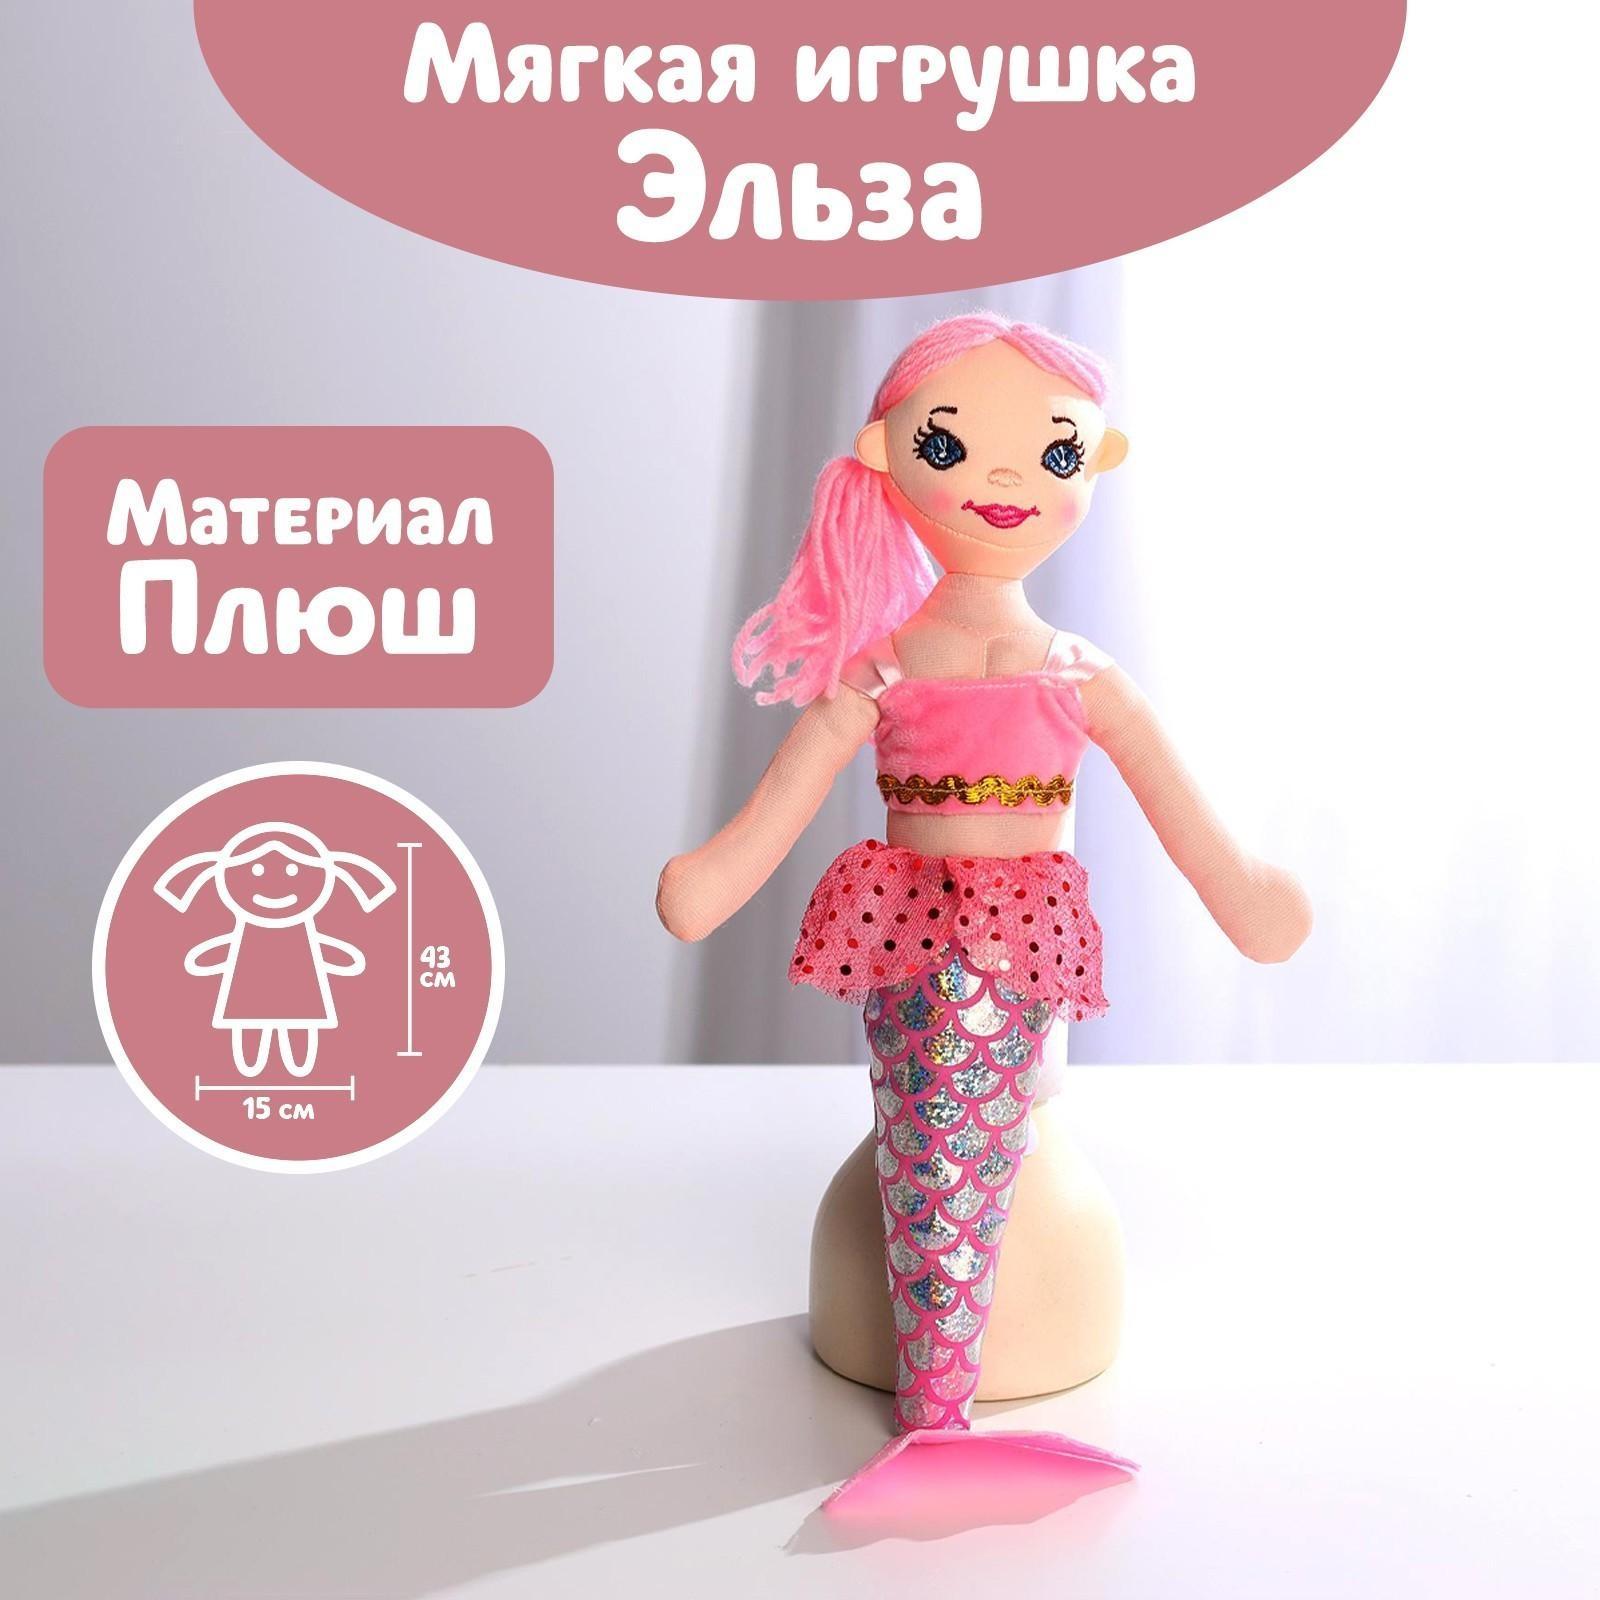 Кукла «Русалочка Эльза», 43 см